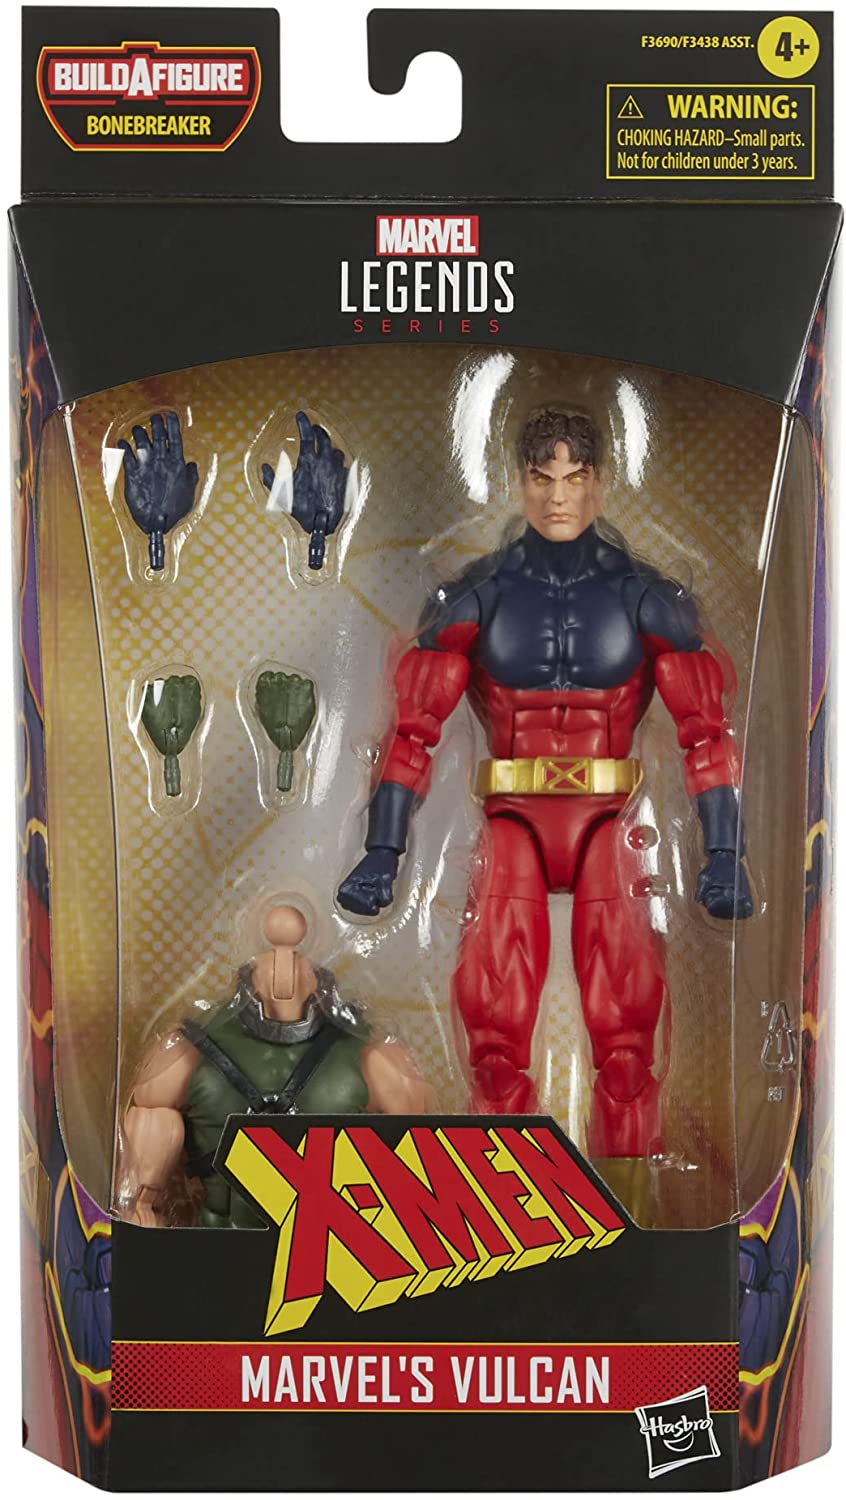 Hasbro Marvel Legends Series X-Men Marvel’s Vulcan Action Figure15 cm Collectibl